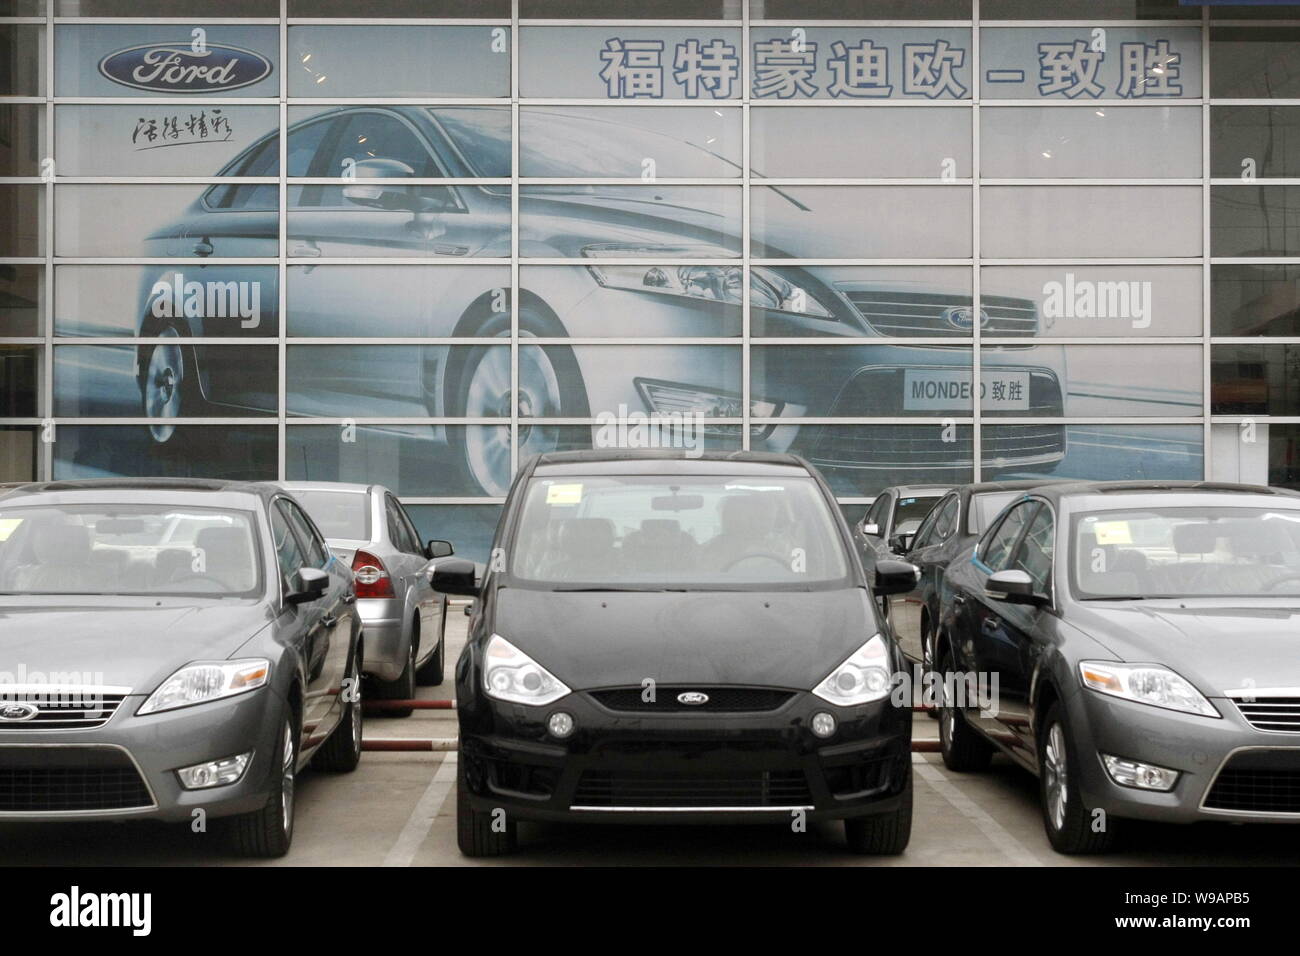 Ford voitures sont garées devant un concessionnaire Ford à Shanghai, Chine, le 6 avril 2010. Ford Motor Companys de joint-ventures et filiale à 100 entités en Chi Banque D'Images